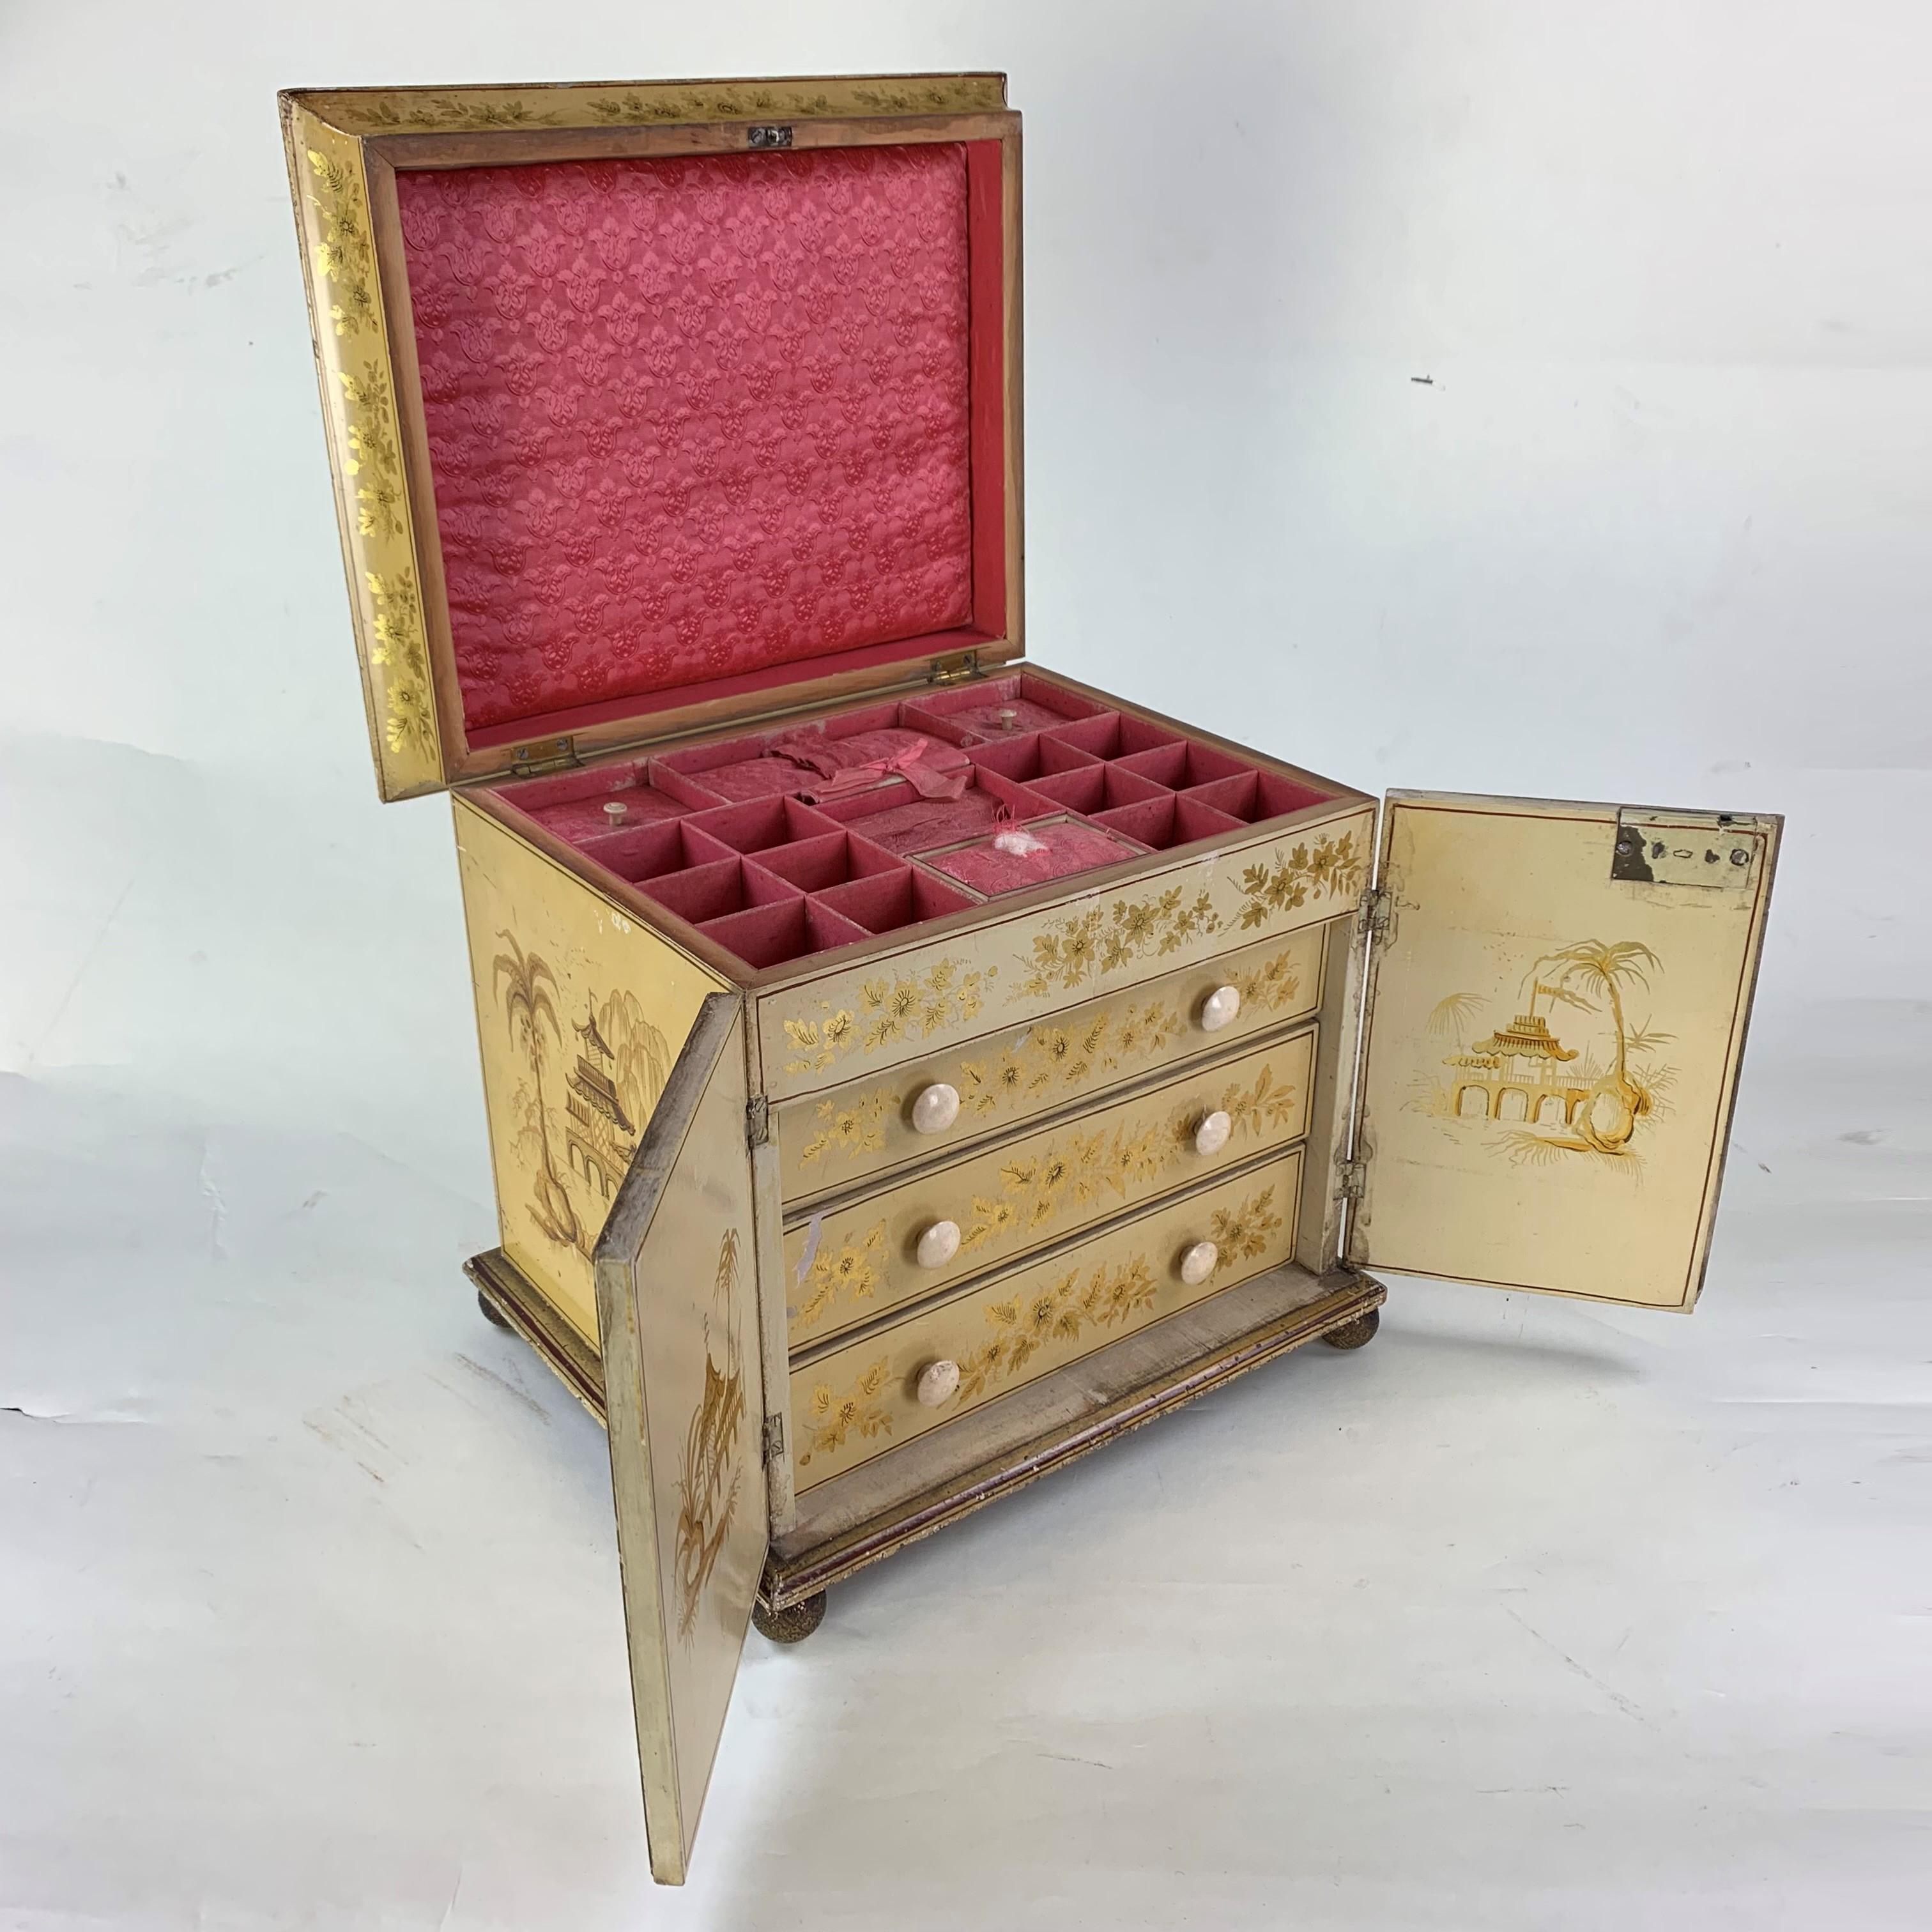 Eine seltene und außergewöhnliche gelbe, chinoiserieverzierte Arbeitsbox aus dem frühen 19. Jahrhundert, deren aufklappbarer Deckel wunderschön mit einem orientalischen 'Tuhau' oder Würdenträger verziert ist, der mit zwei Dienern in einem Tempel